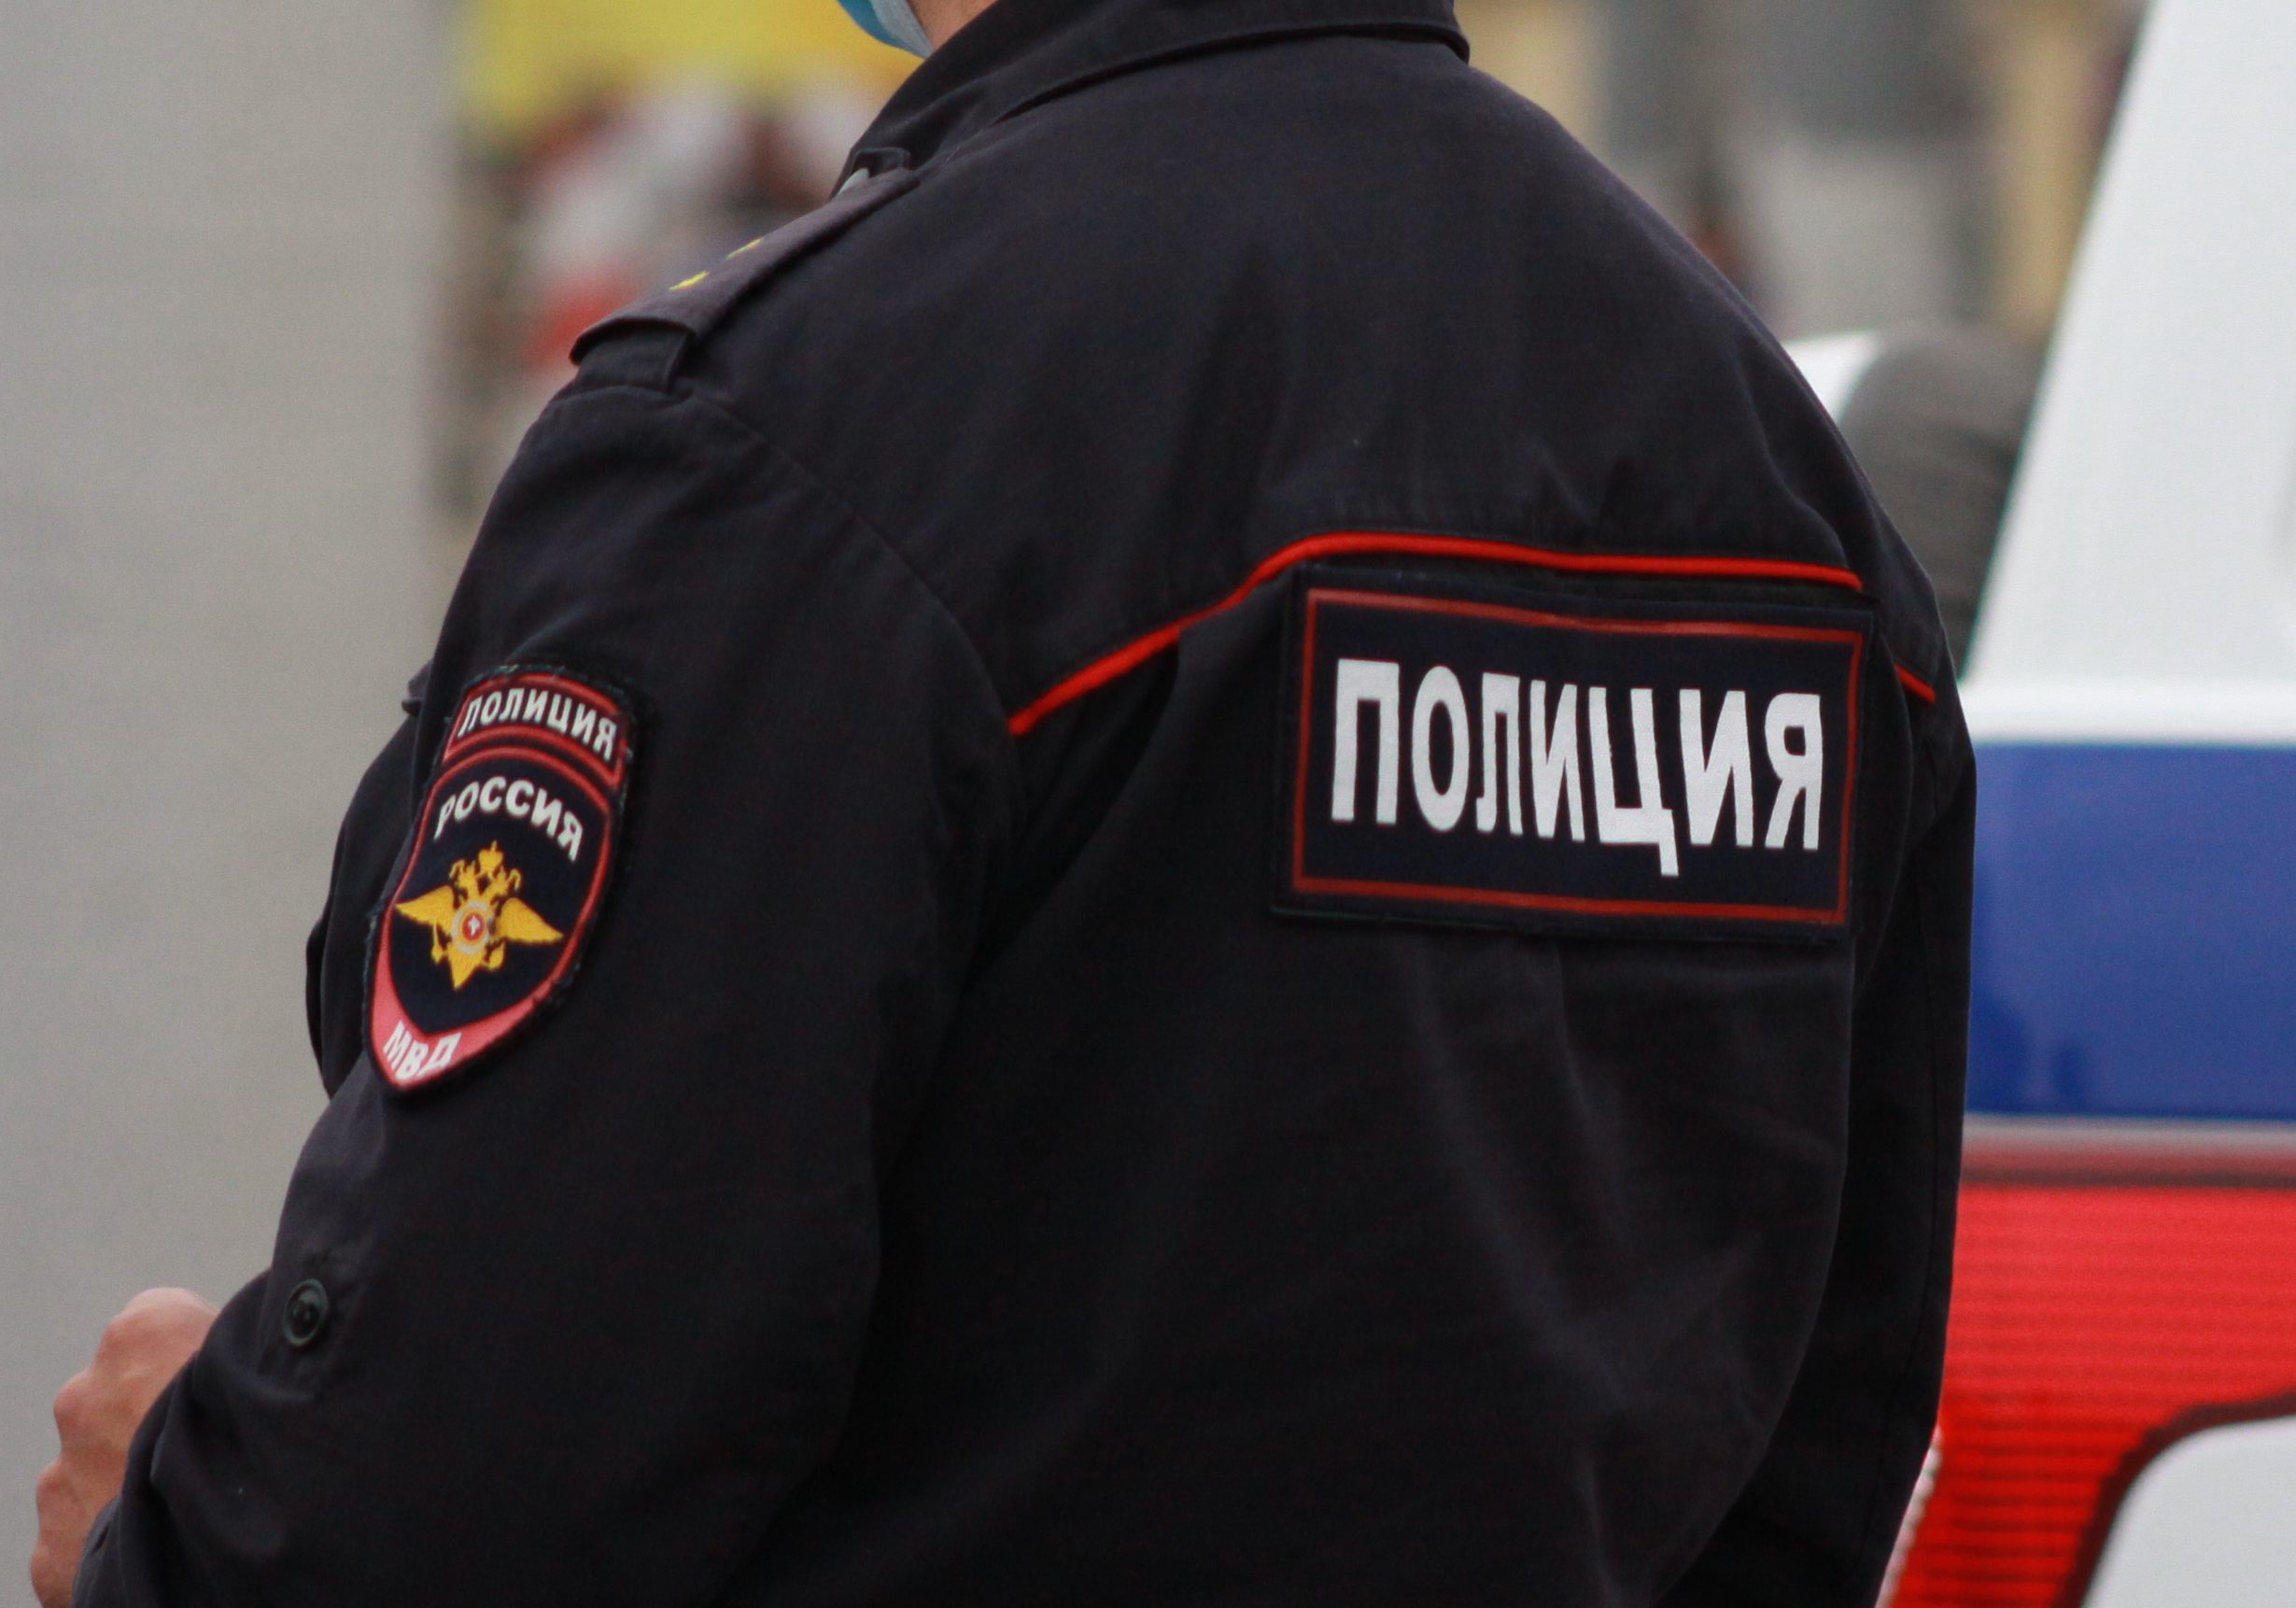 Экс-полицейский из Новомосковска получил часть квартиры в качестве взятки: возбуждено уголовное дело